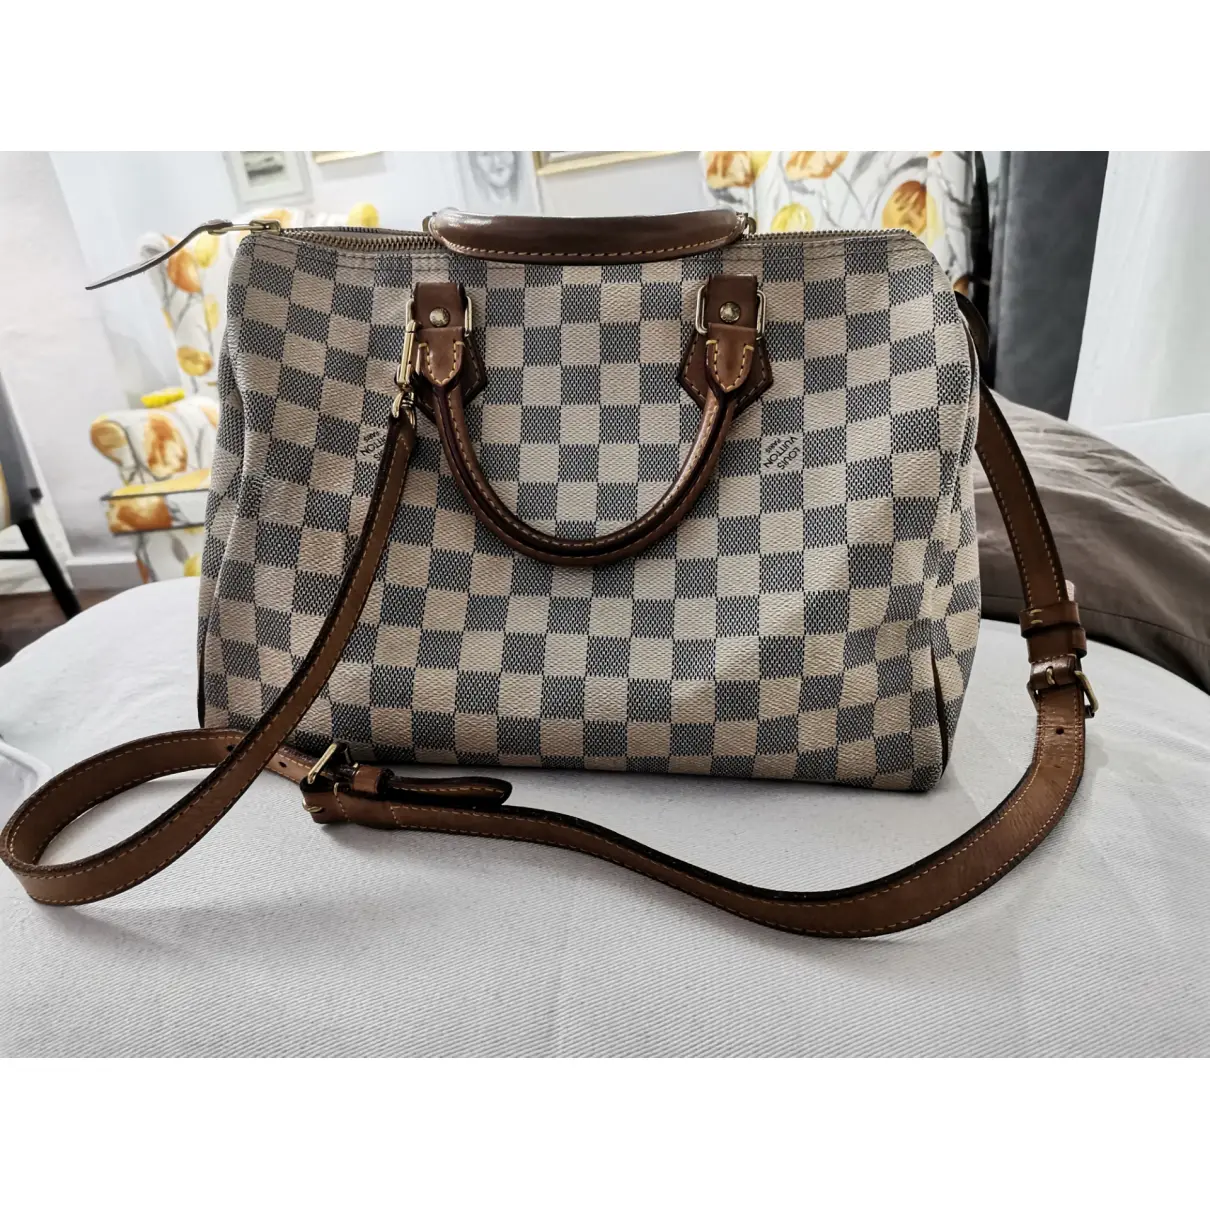 Buy Louis Vuitton Speedy Bandoulière leather handbag online